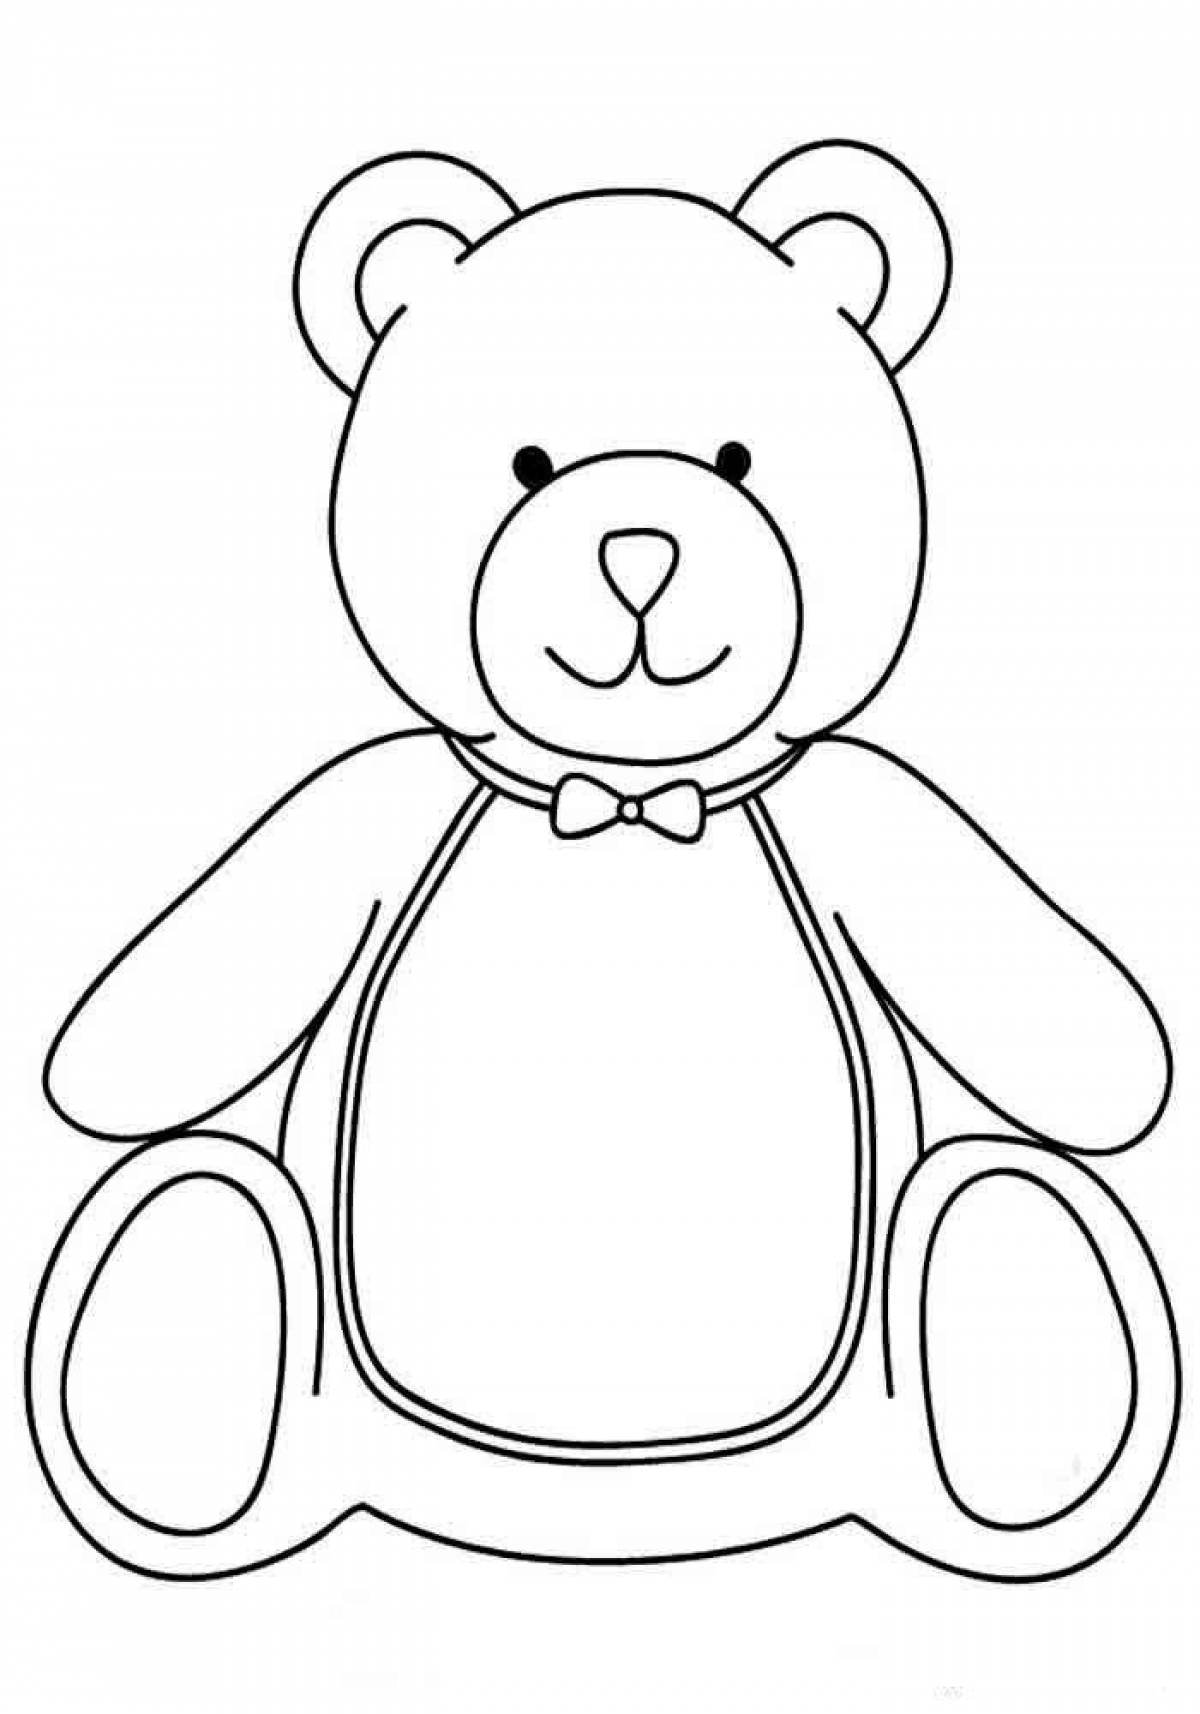 Раскраска милый медведь для детей